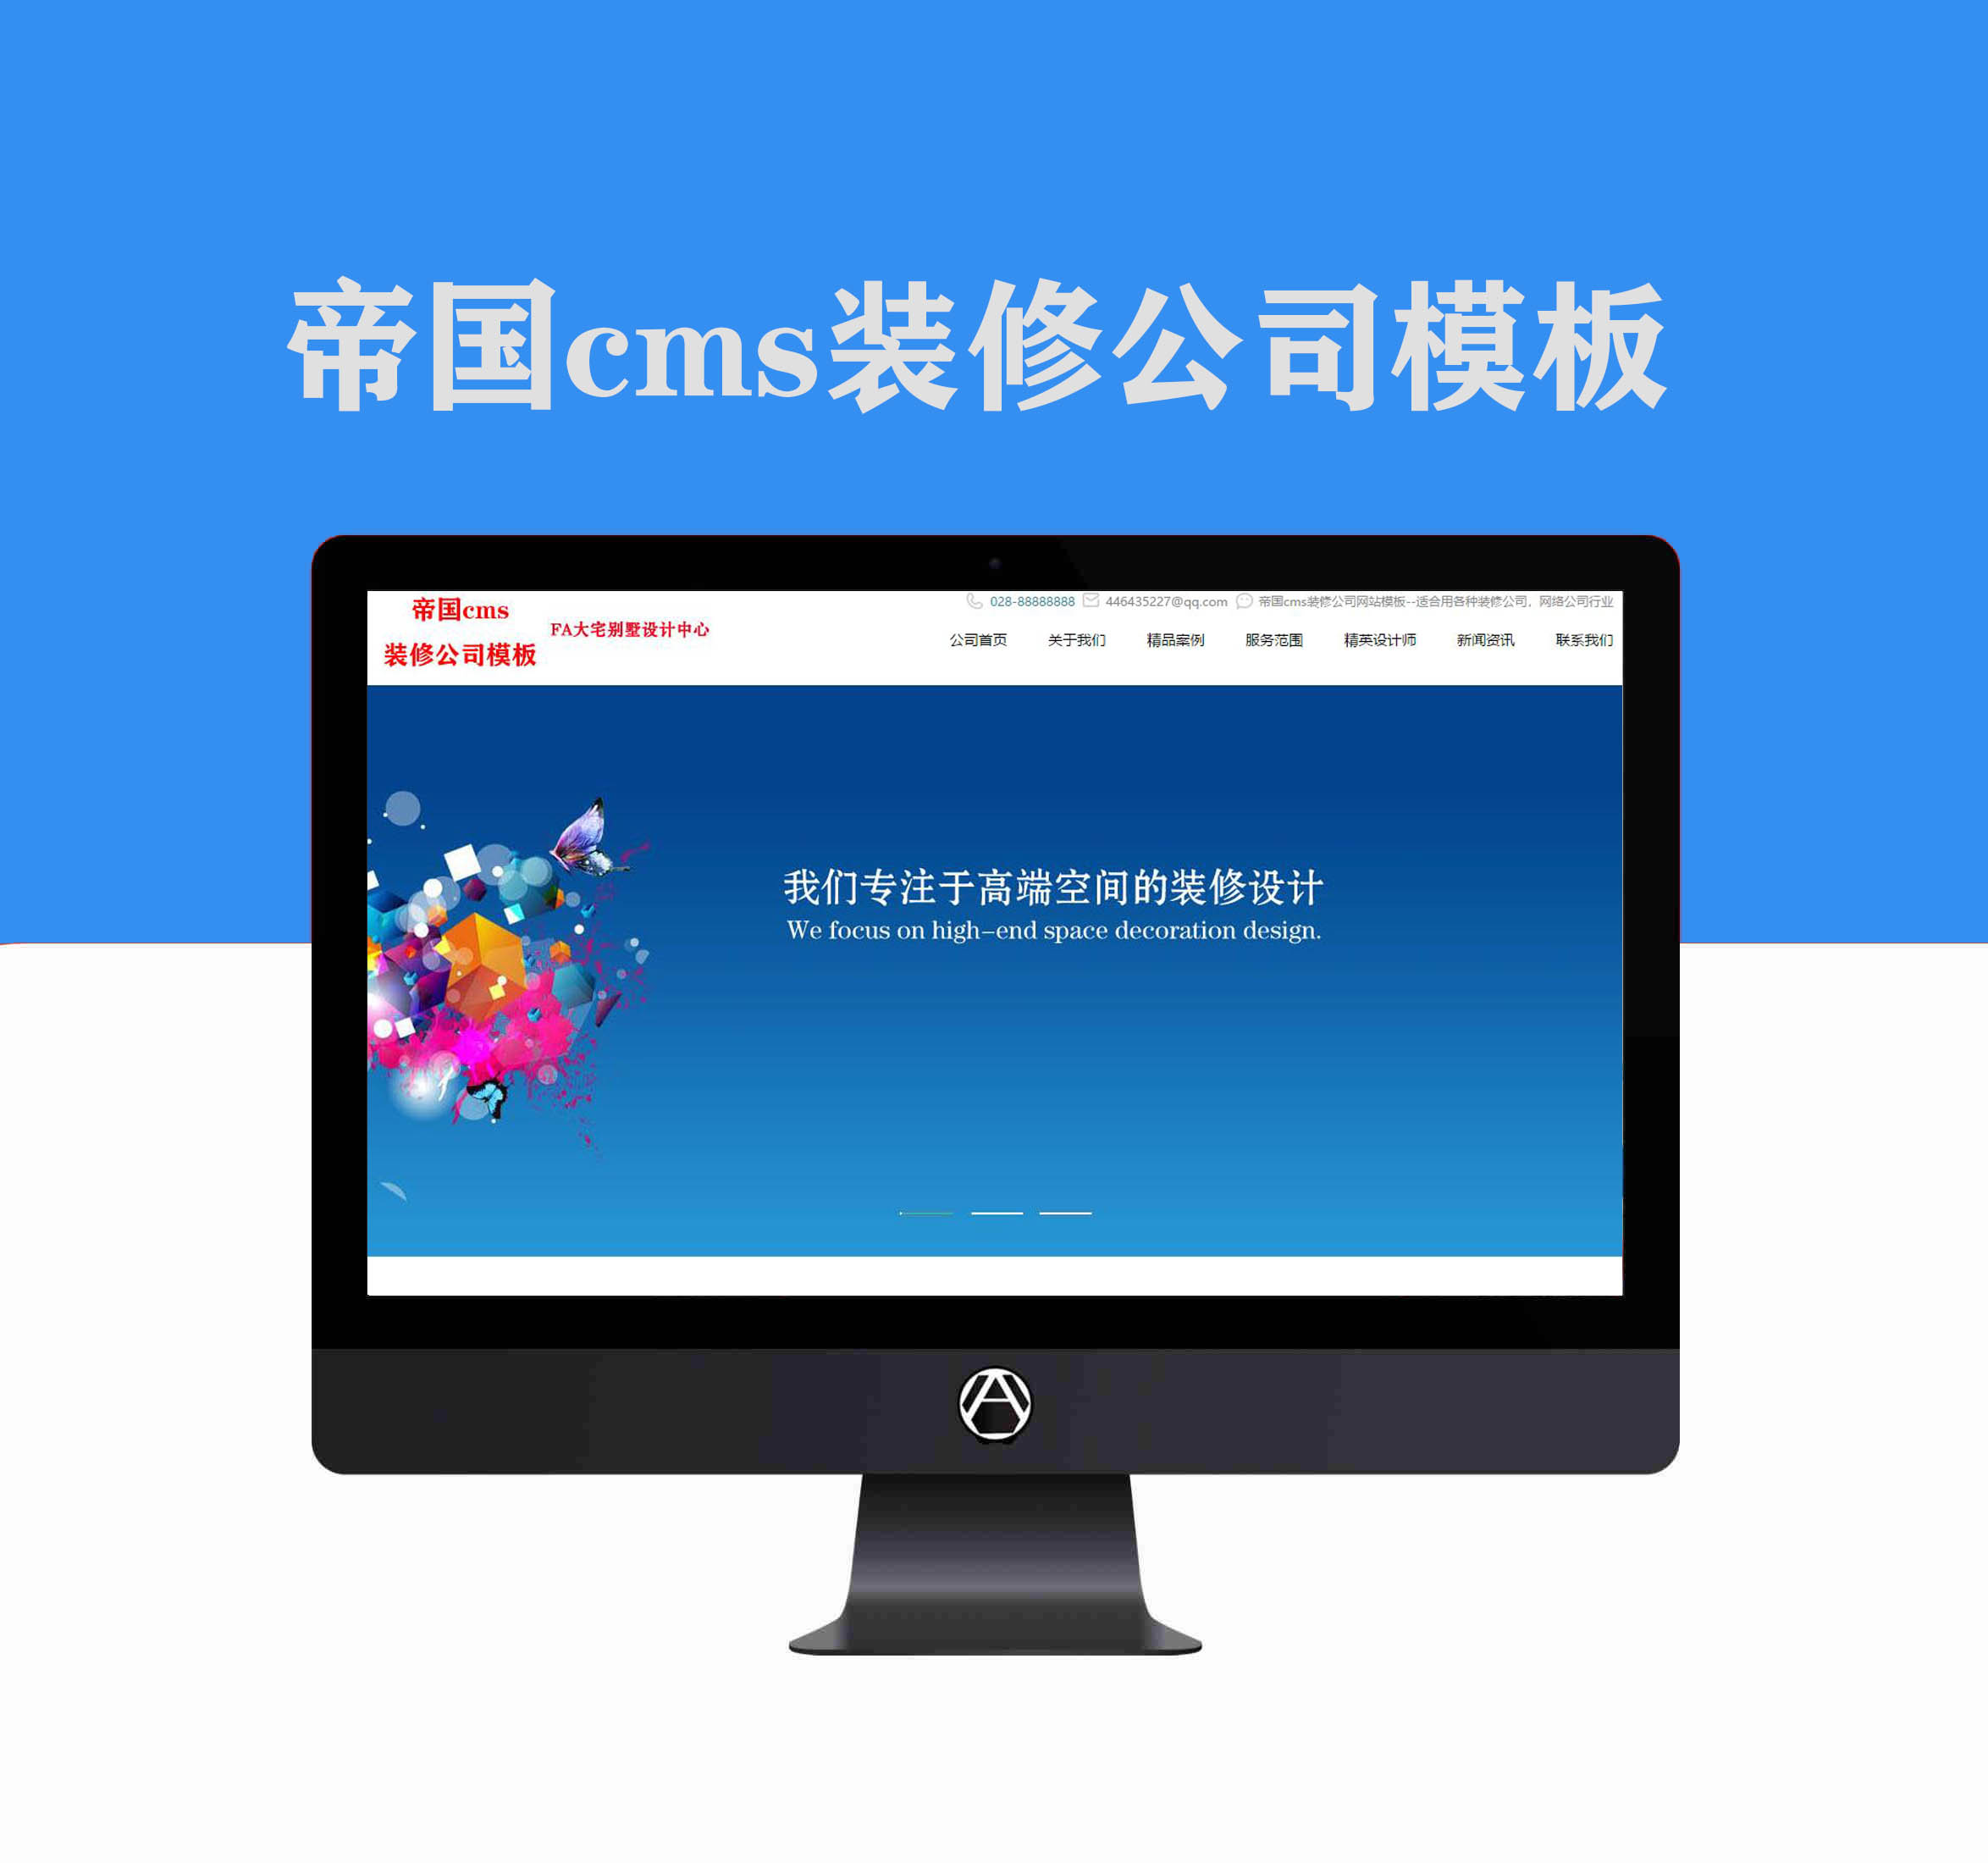 帝国cms装修公司网络科技公司双端网站模板